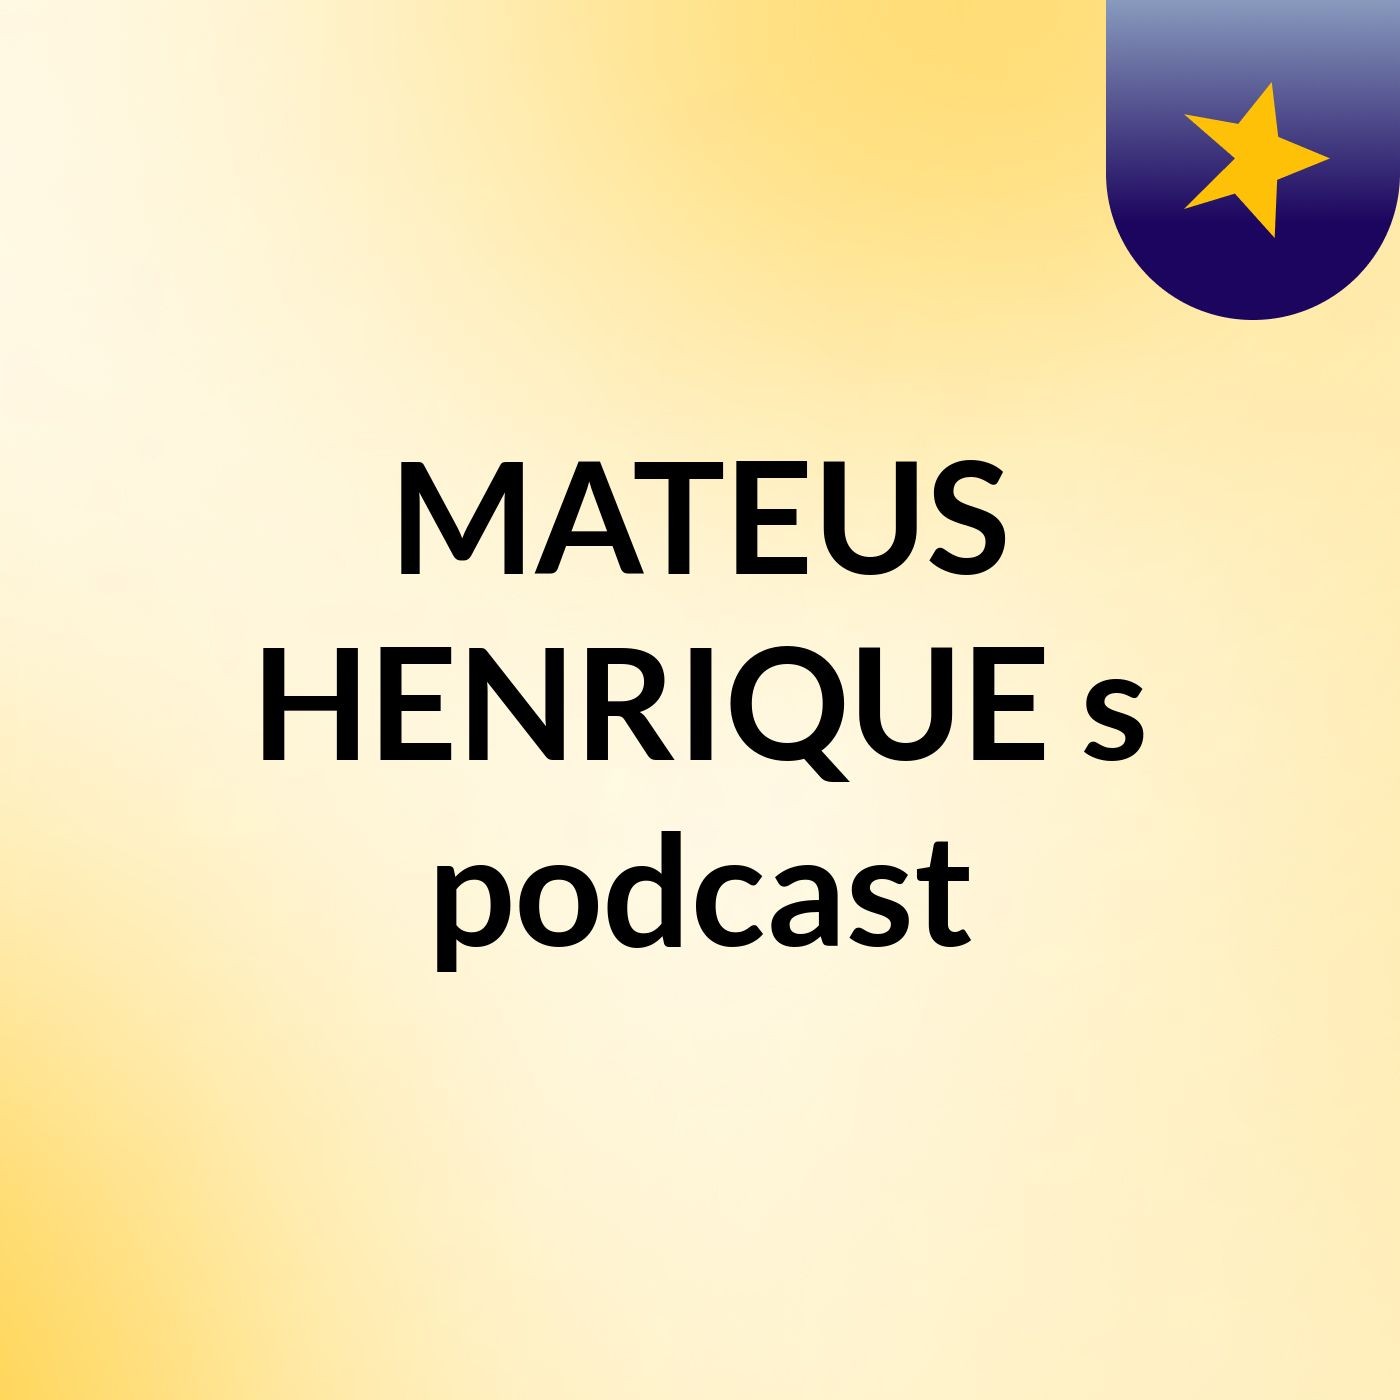 MATEUS HENRIQUE's podcast